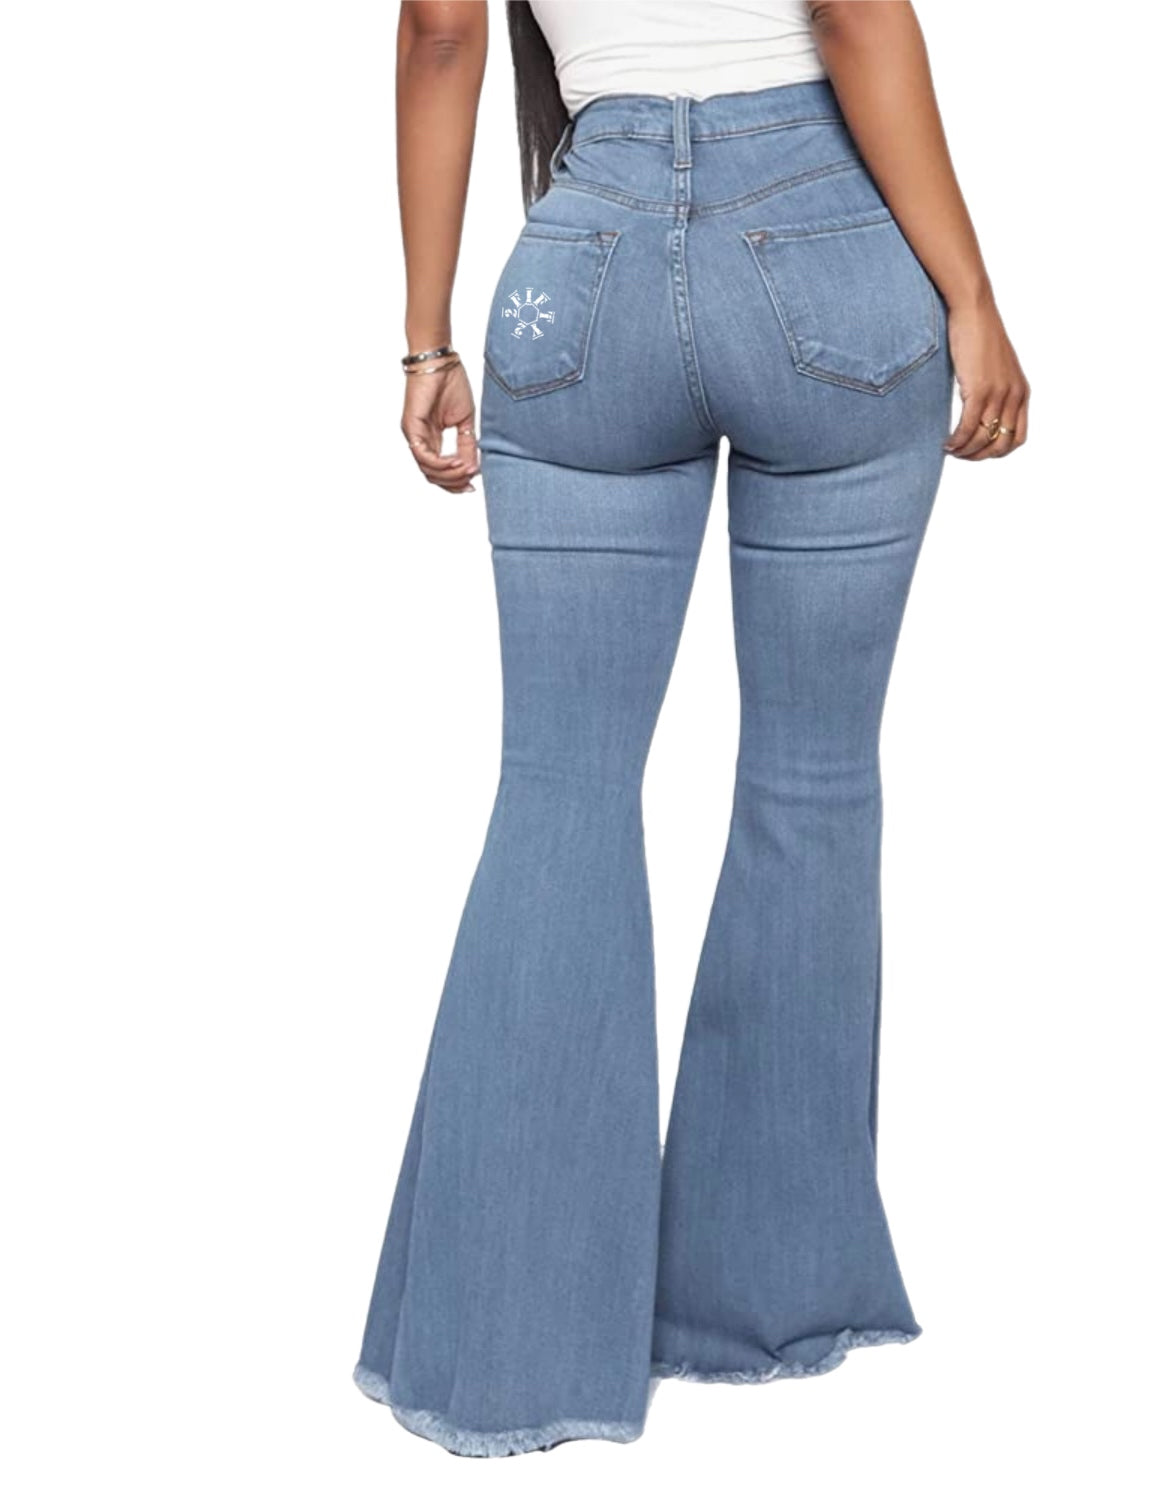 Women flare jeans